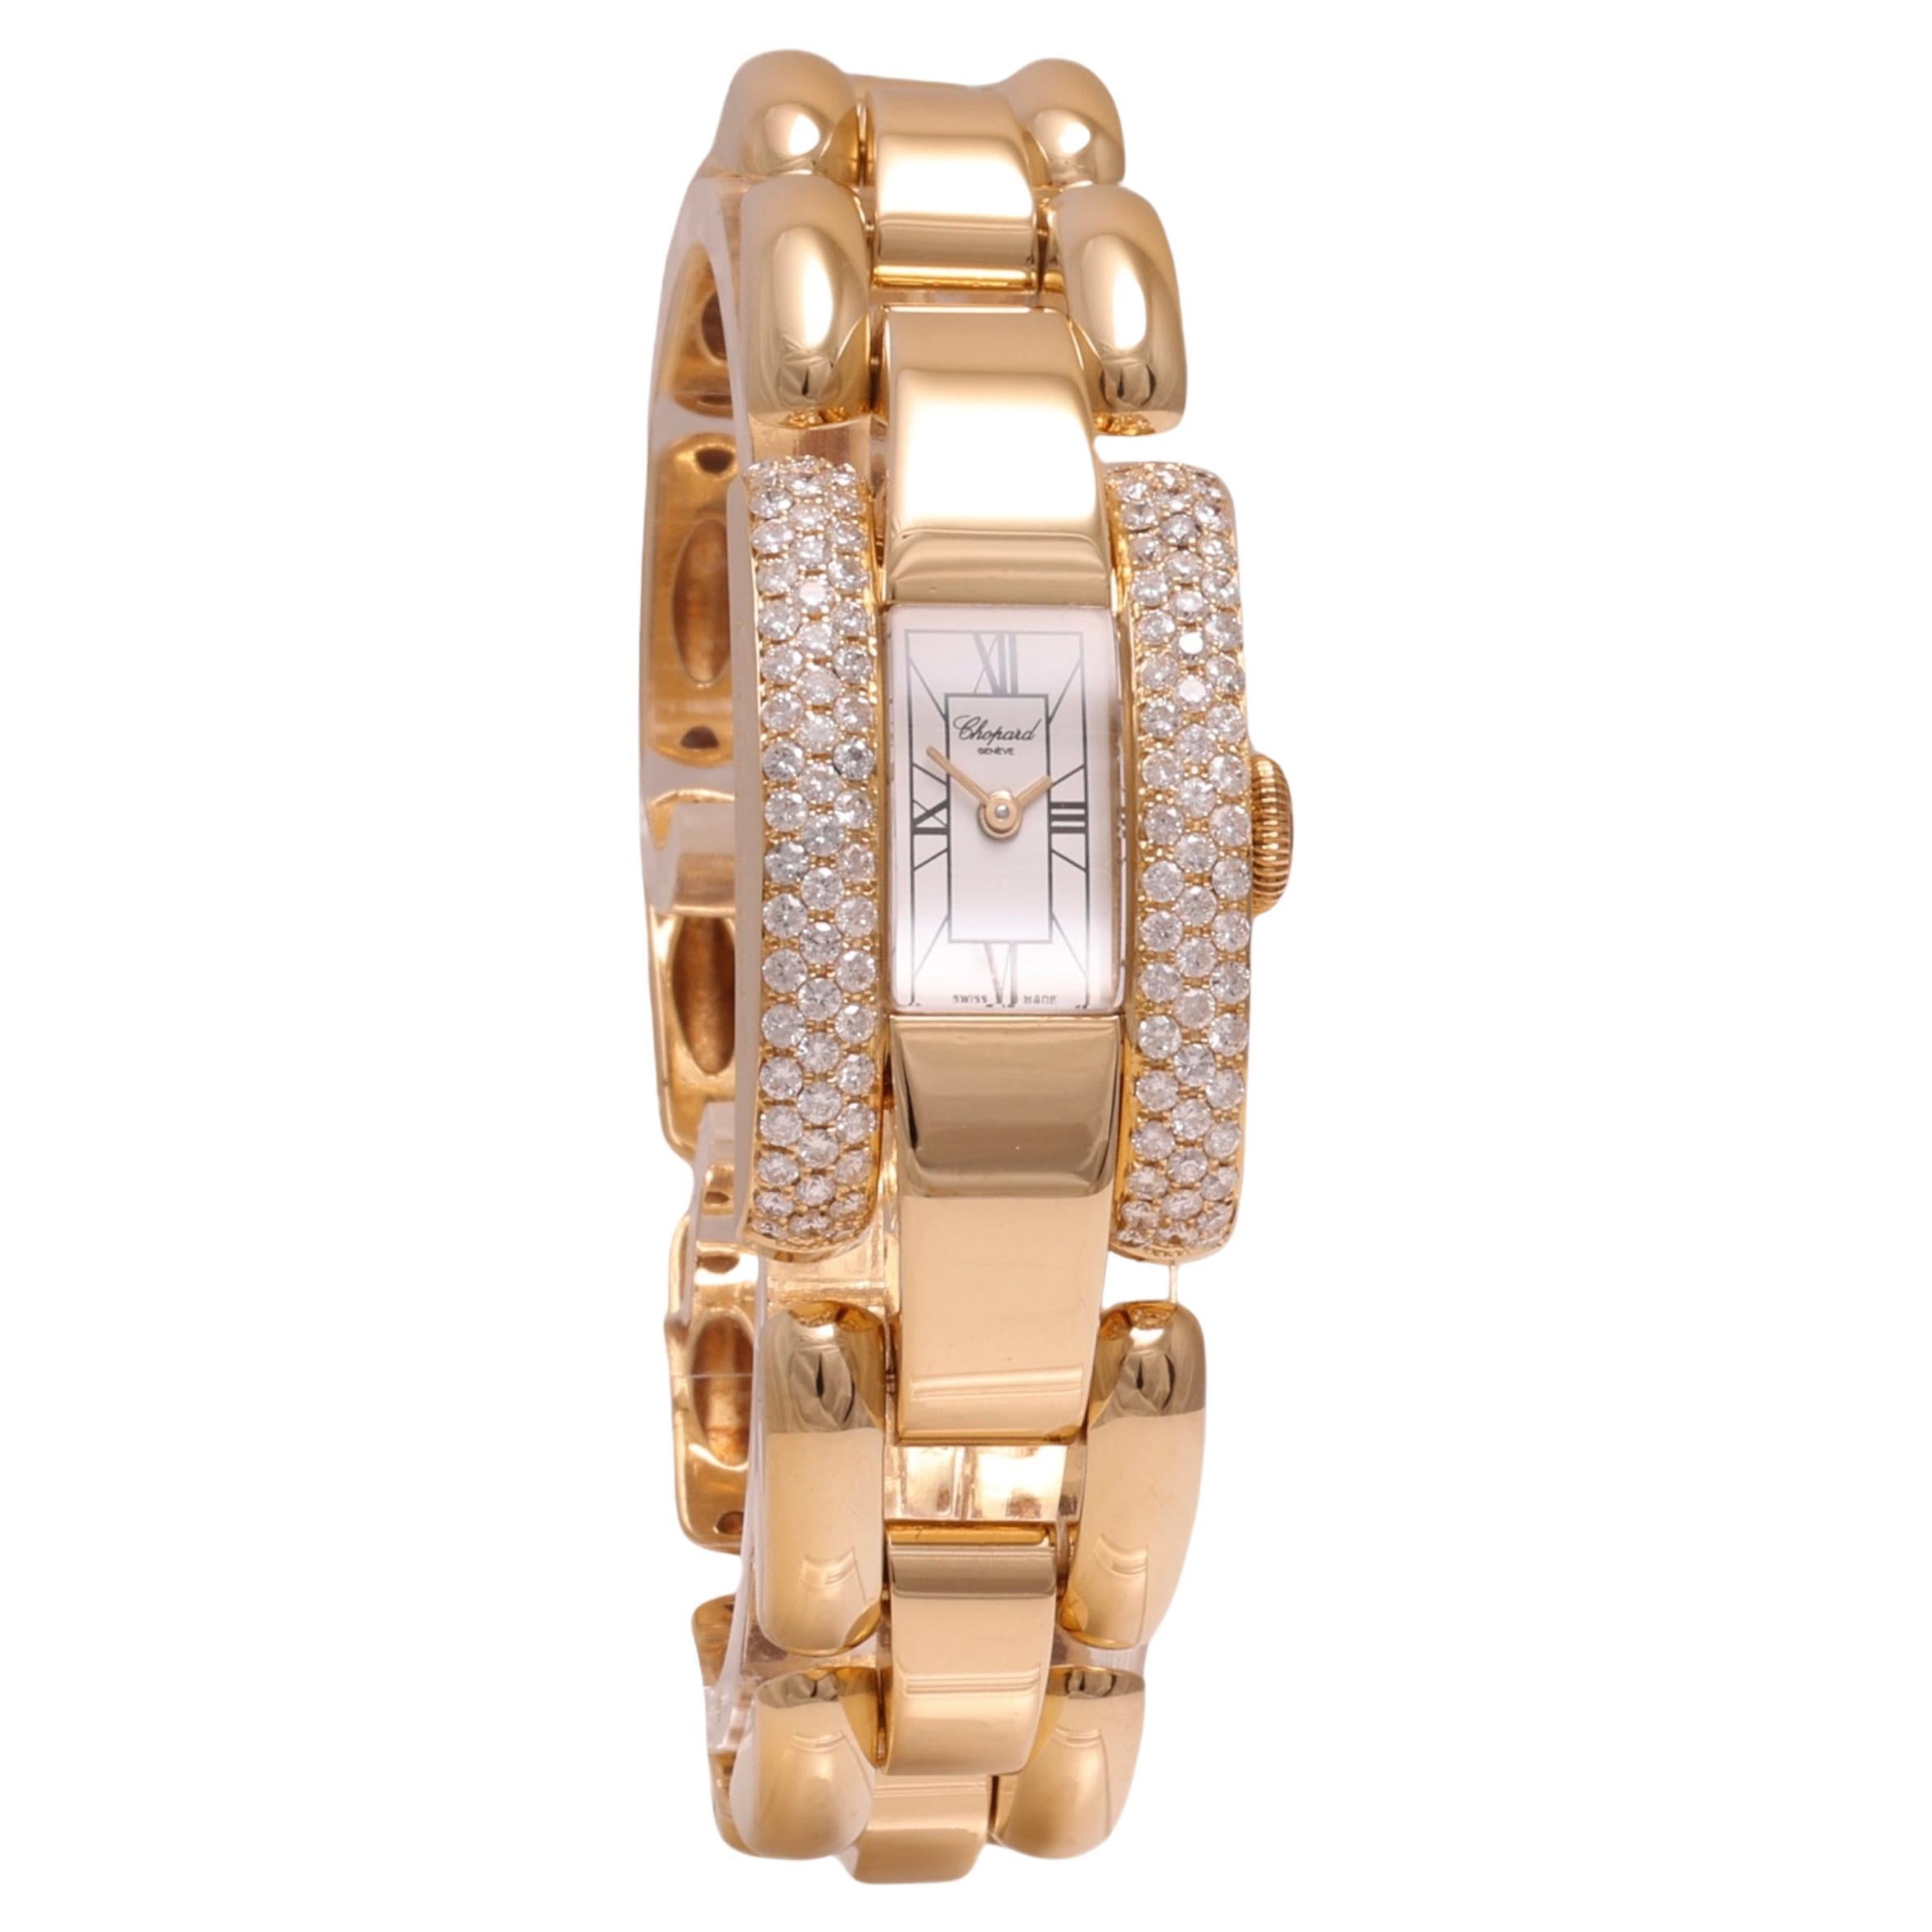 18 Kt. Gold & Diamonds Chopard La Strada Wrist Watch For Sale